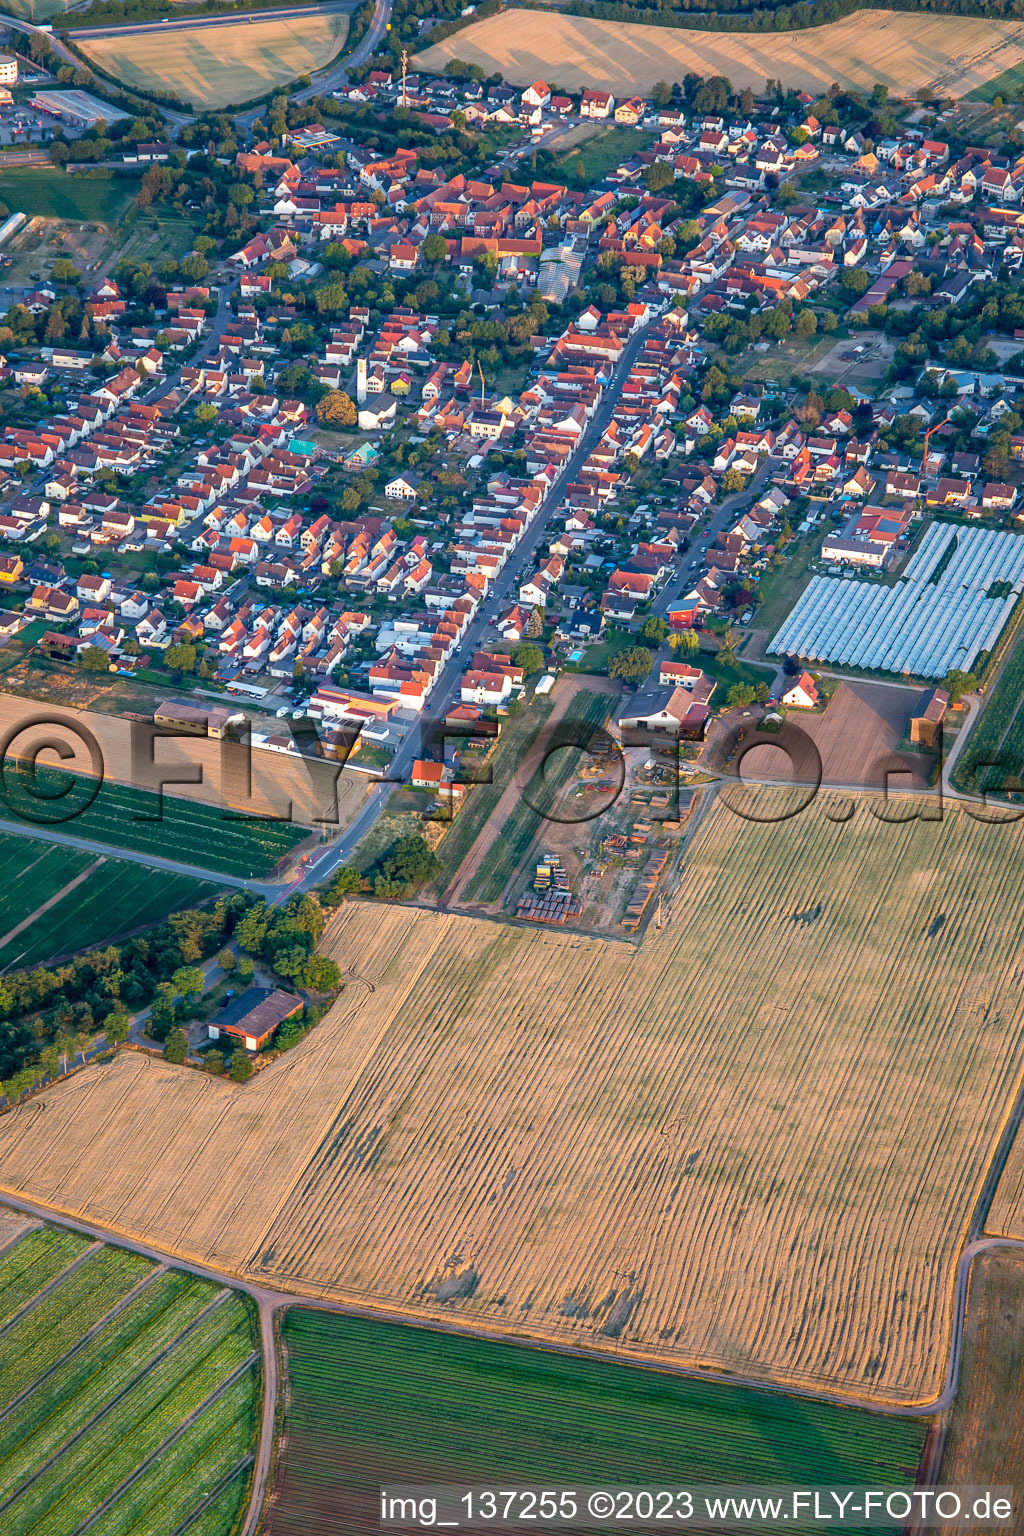 Luftbild von Bahnhofstr in Schwegenheim im Bundesland Rheinland-Pfalz, Deutschland